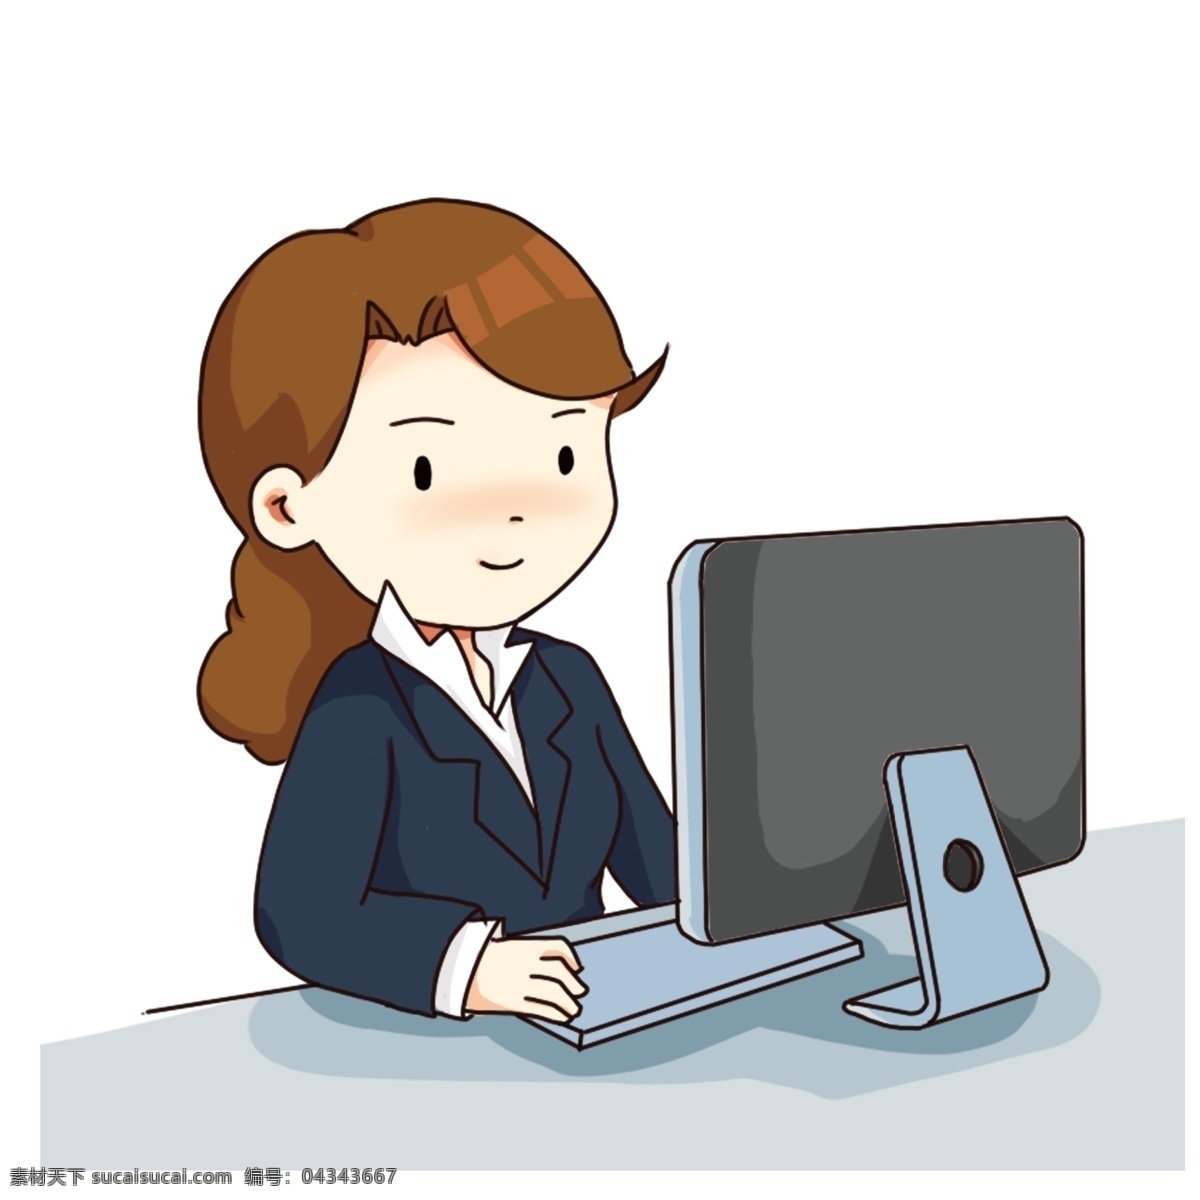 手绘 卡通 认真 工作 白领 女孩 加班的女孩 认真工作 敲击键盘 用电脑 奋斗的女孩